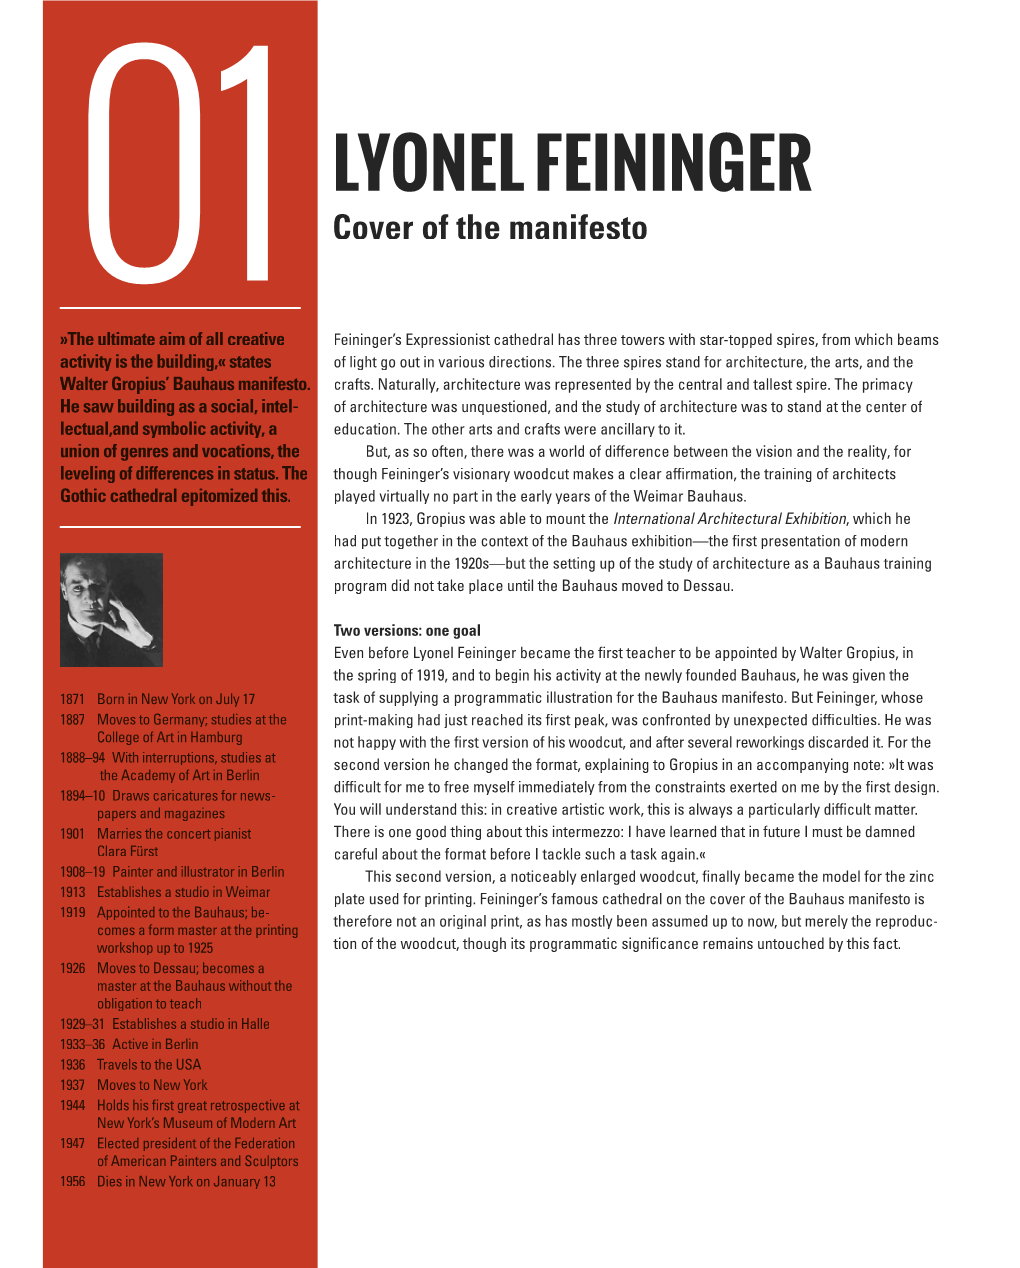 LYONEL FEININGER Cover of the Manifesto